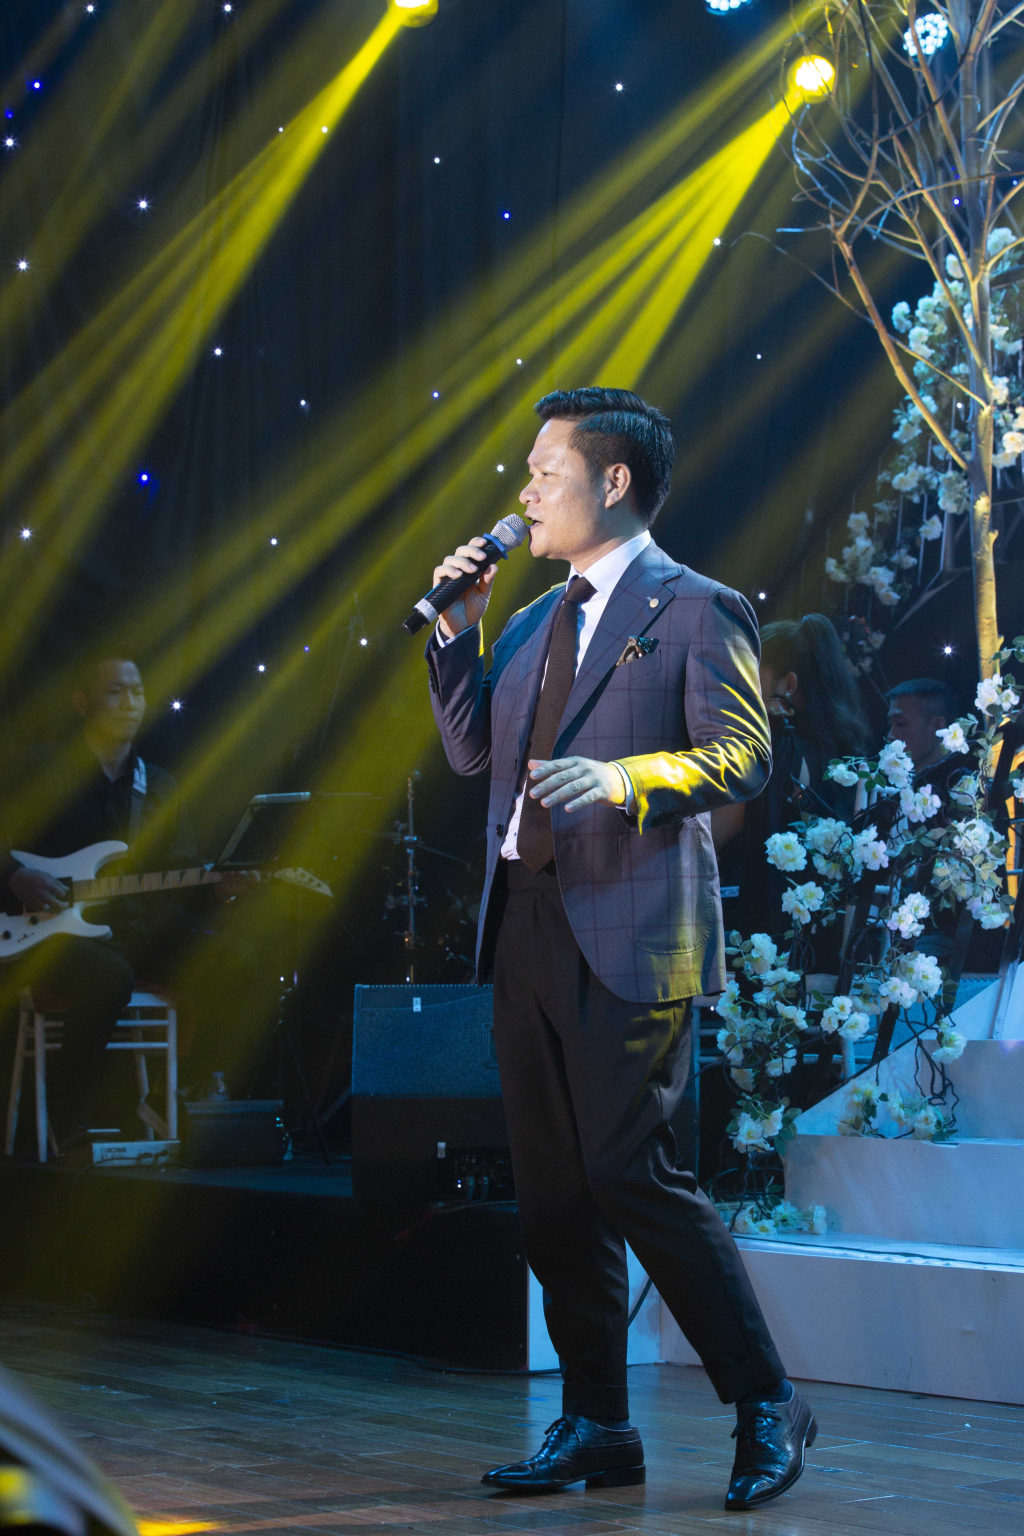 Ca sĩ Hoàng Tùng thể hiện ca khúc “Cẩm Phả tôi yêu” của Trần Toàn.